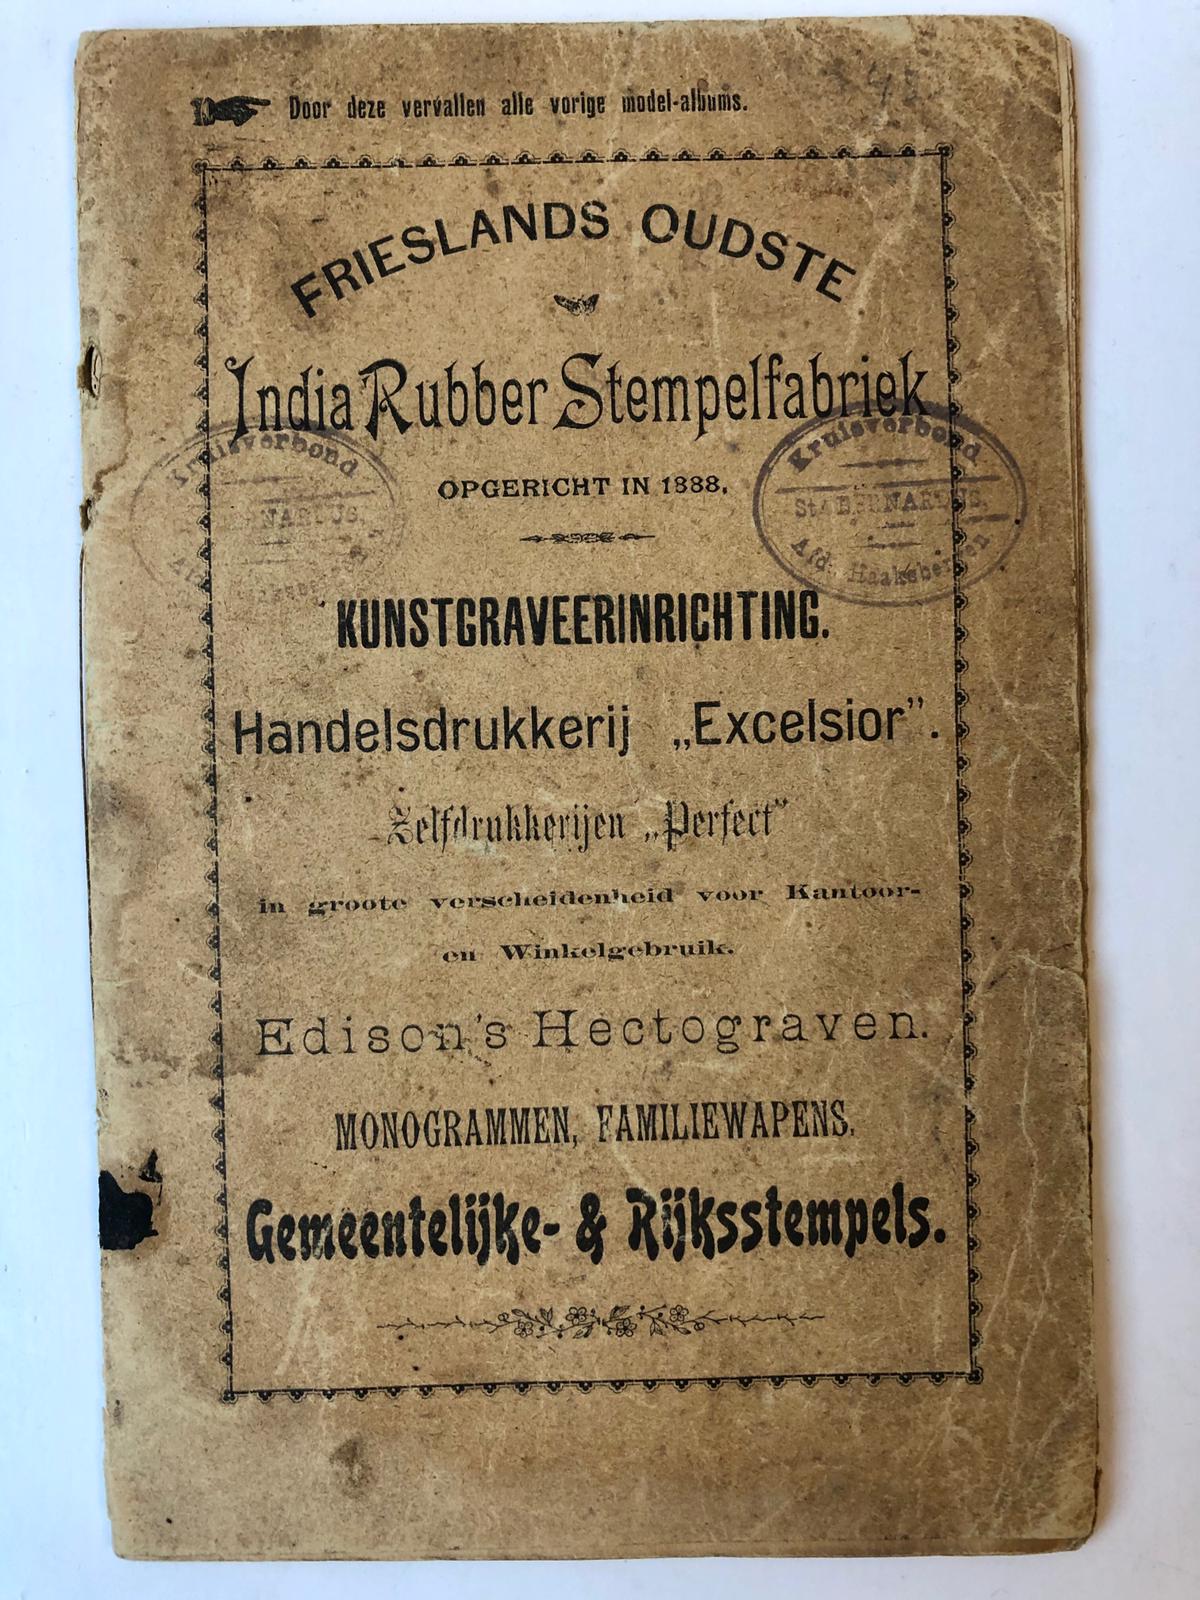  - STEMPELFABRIKANT Prospectus van Frieslands oudste India rubber stempelfabriek, opgericht in 1888, kunstgraveerinrichting handelsdrukkerij Excelsior, 40 p. met in groen gedrukte voorbeelden van rubber stempels, ca 1901.